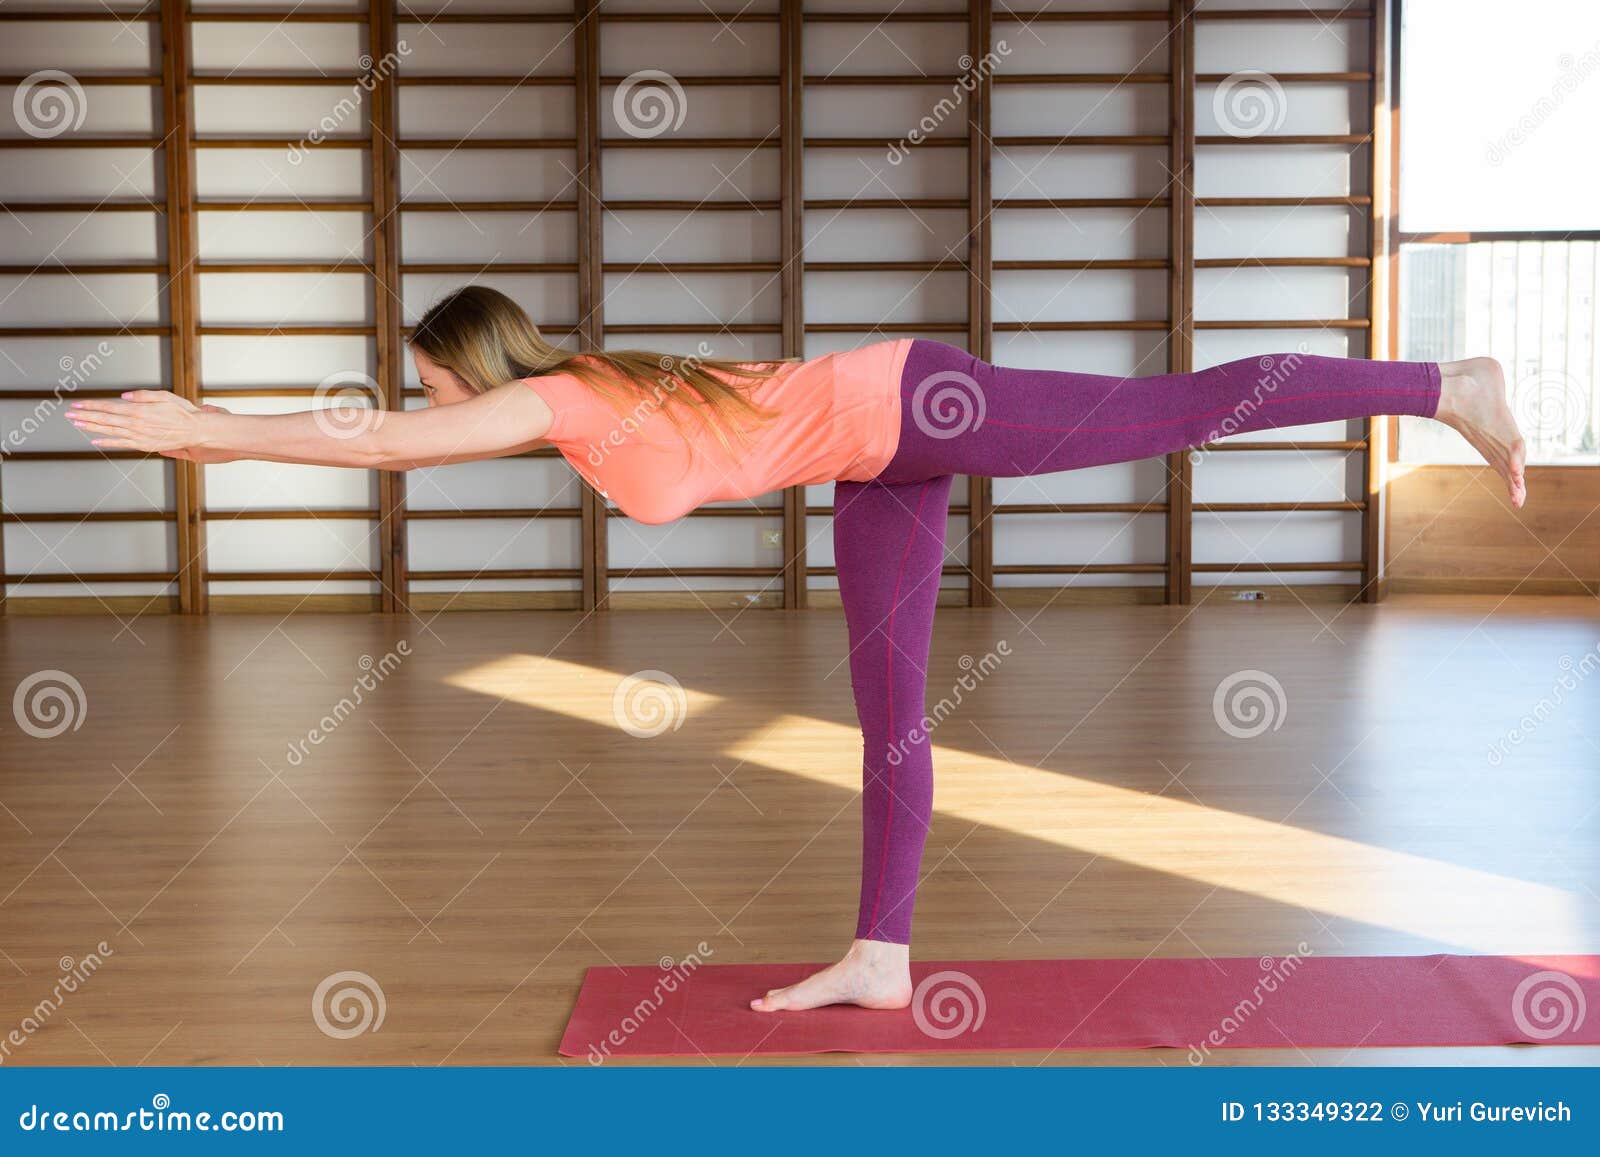 做瑜伽实践-健康生活和自然平衡的概念的运动的年轻女人在身体和心理发展放松和凝思之间